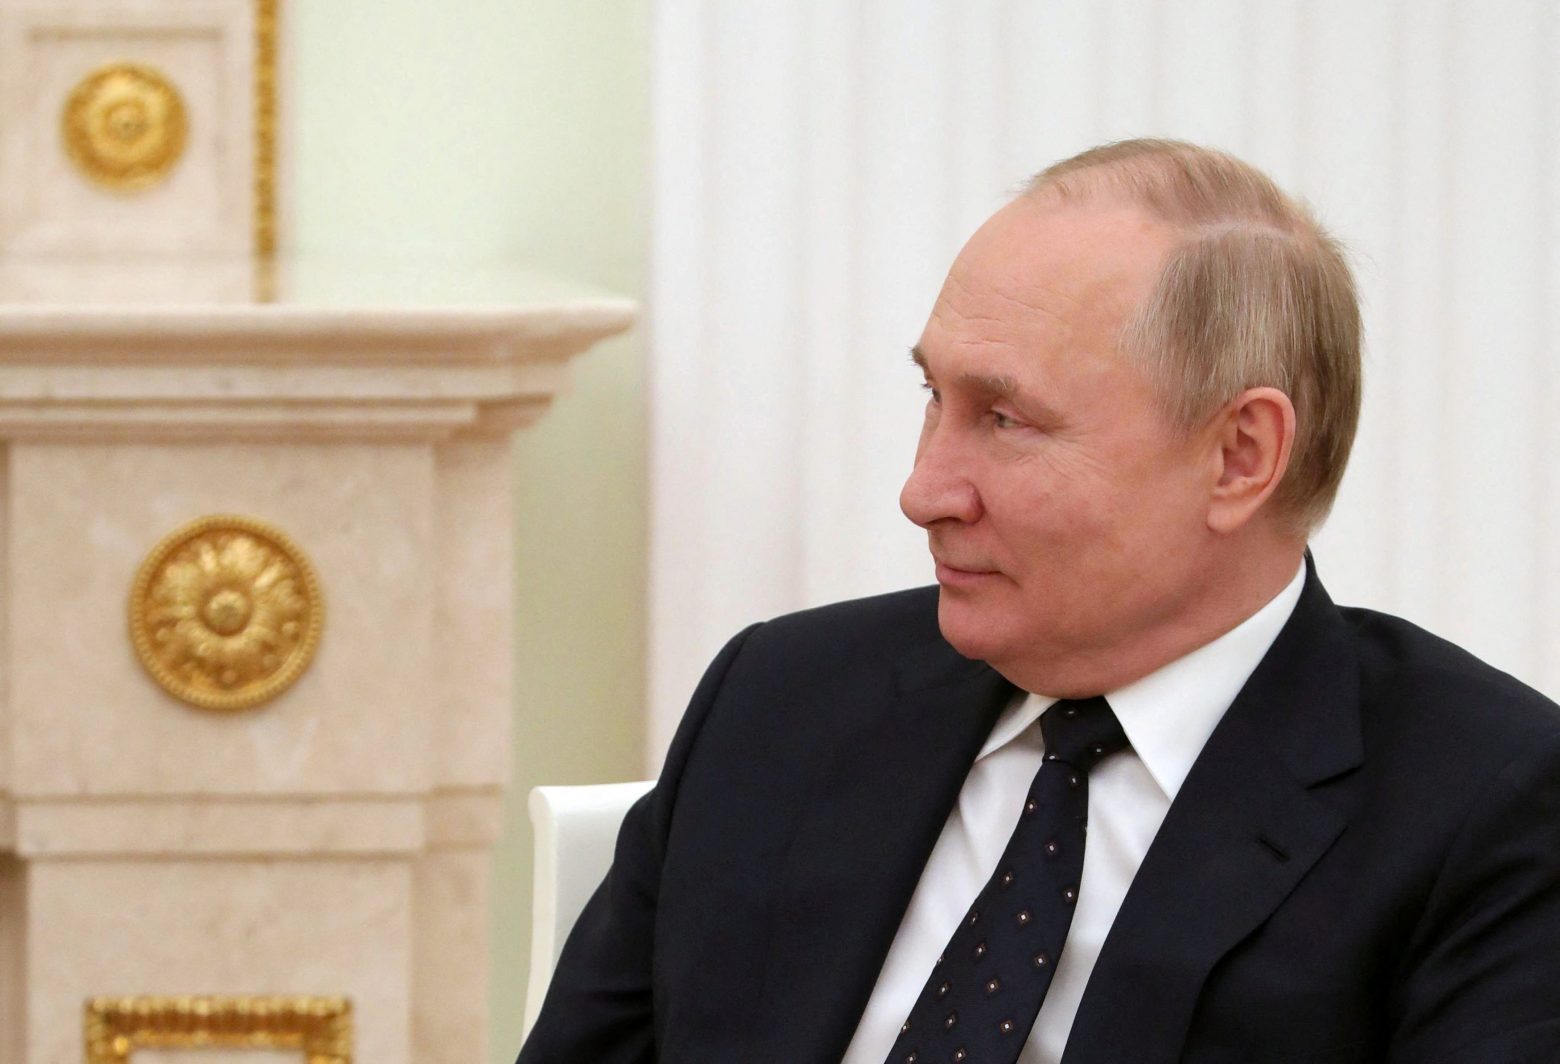 «Ο Πούτιν ανέτρεψε τα σχέδια για τη Νέα Τάξη Πραγμάτων που ετοιμάζει το βαθύ κράτος των ΗΠΑ»